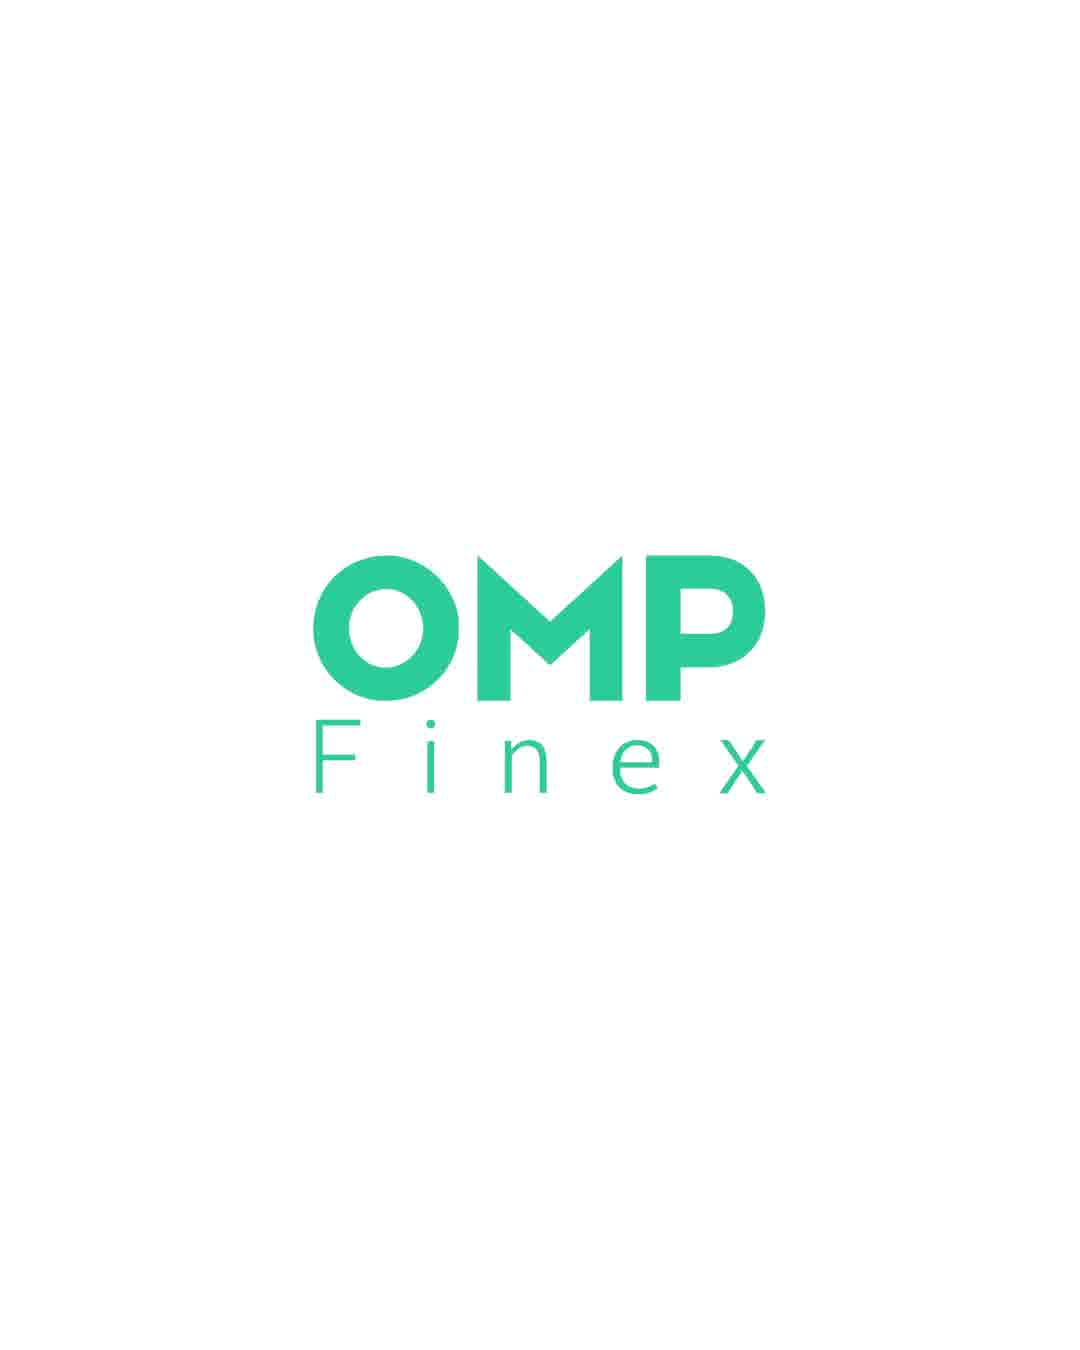 وضعیت تریدرهای تازه‌کار موقع نوسان قیمت | ompfinex